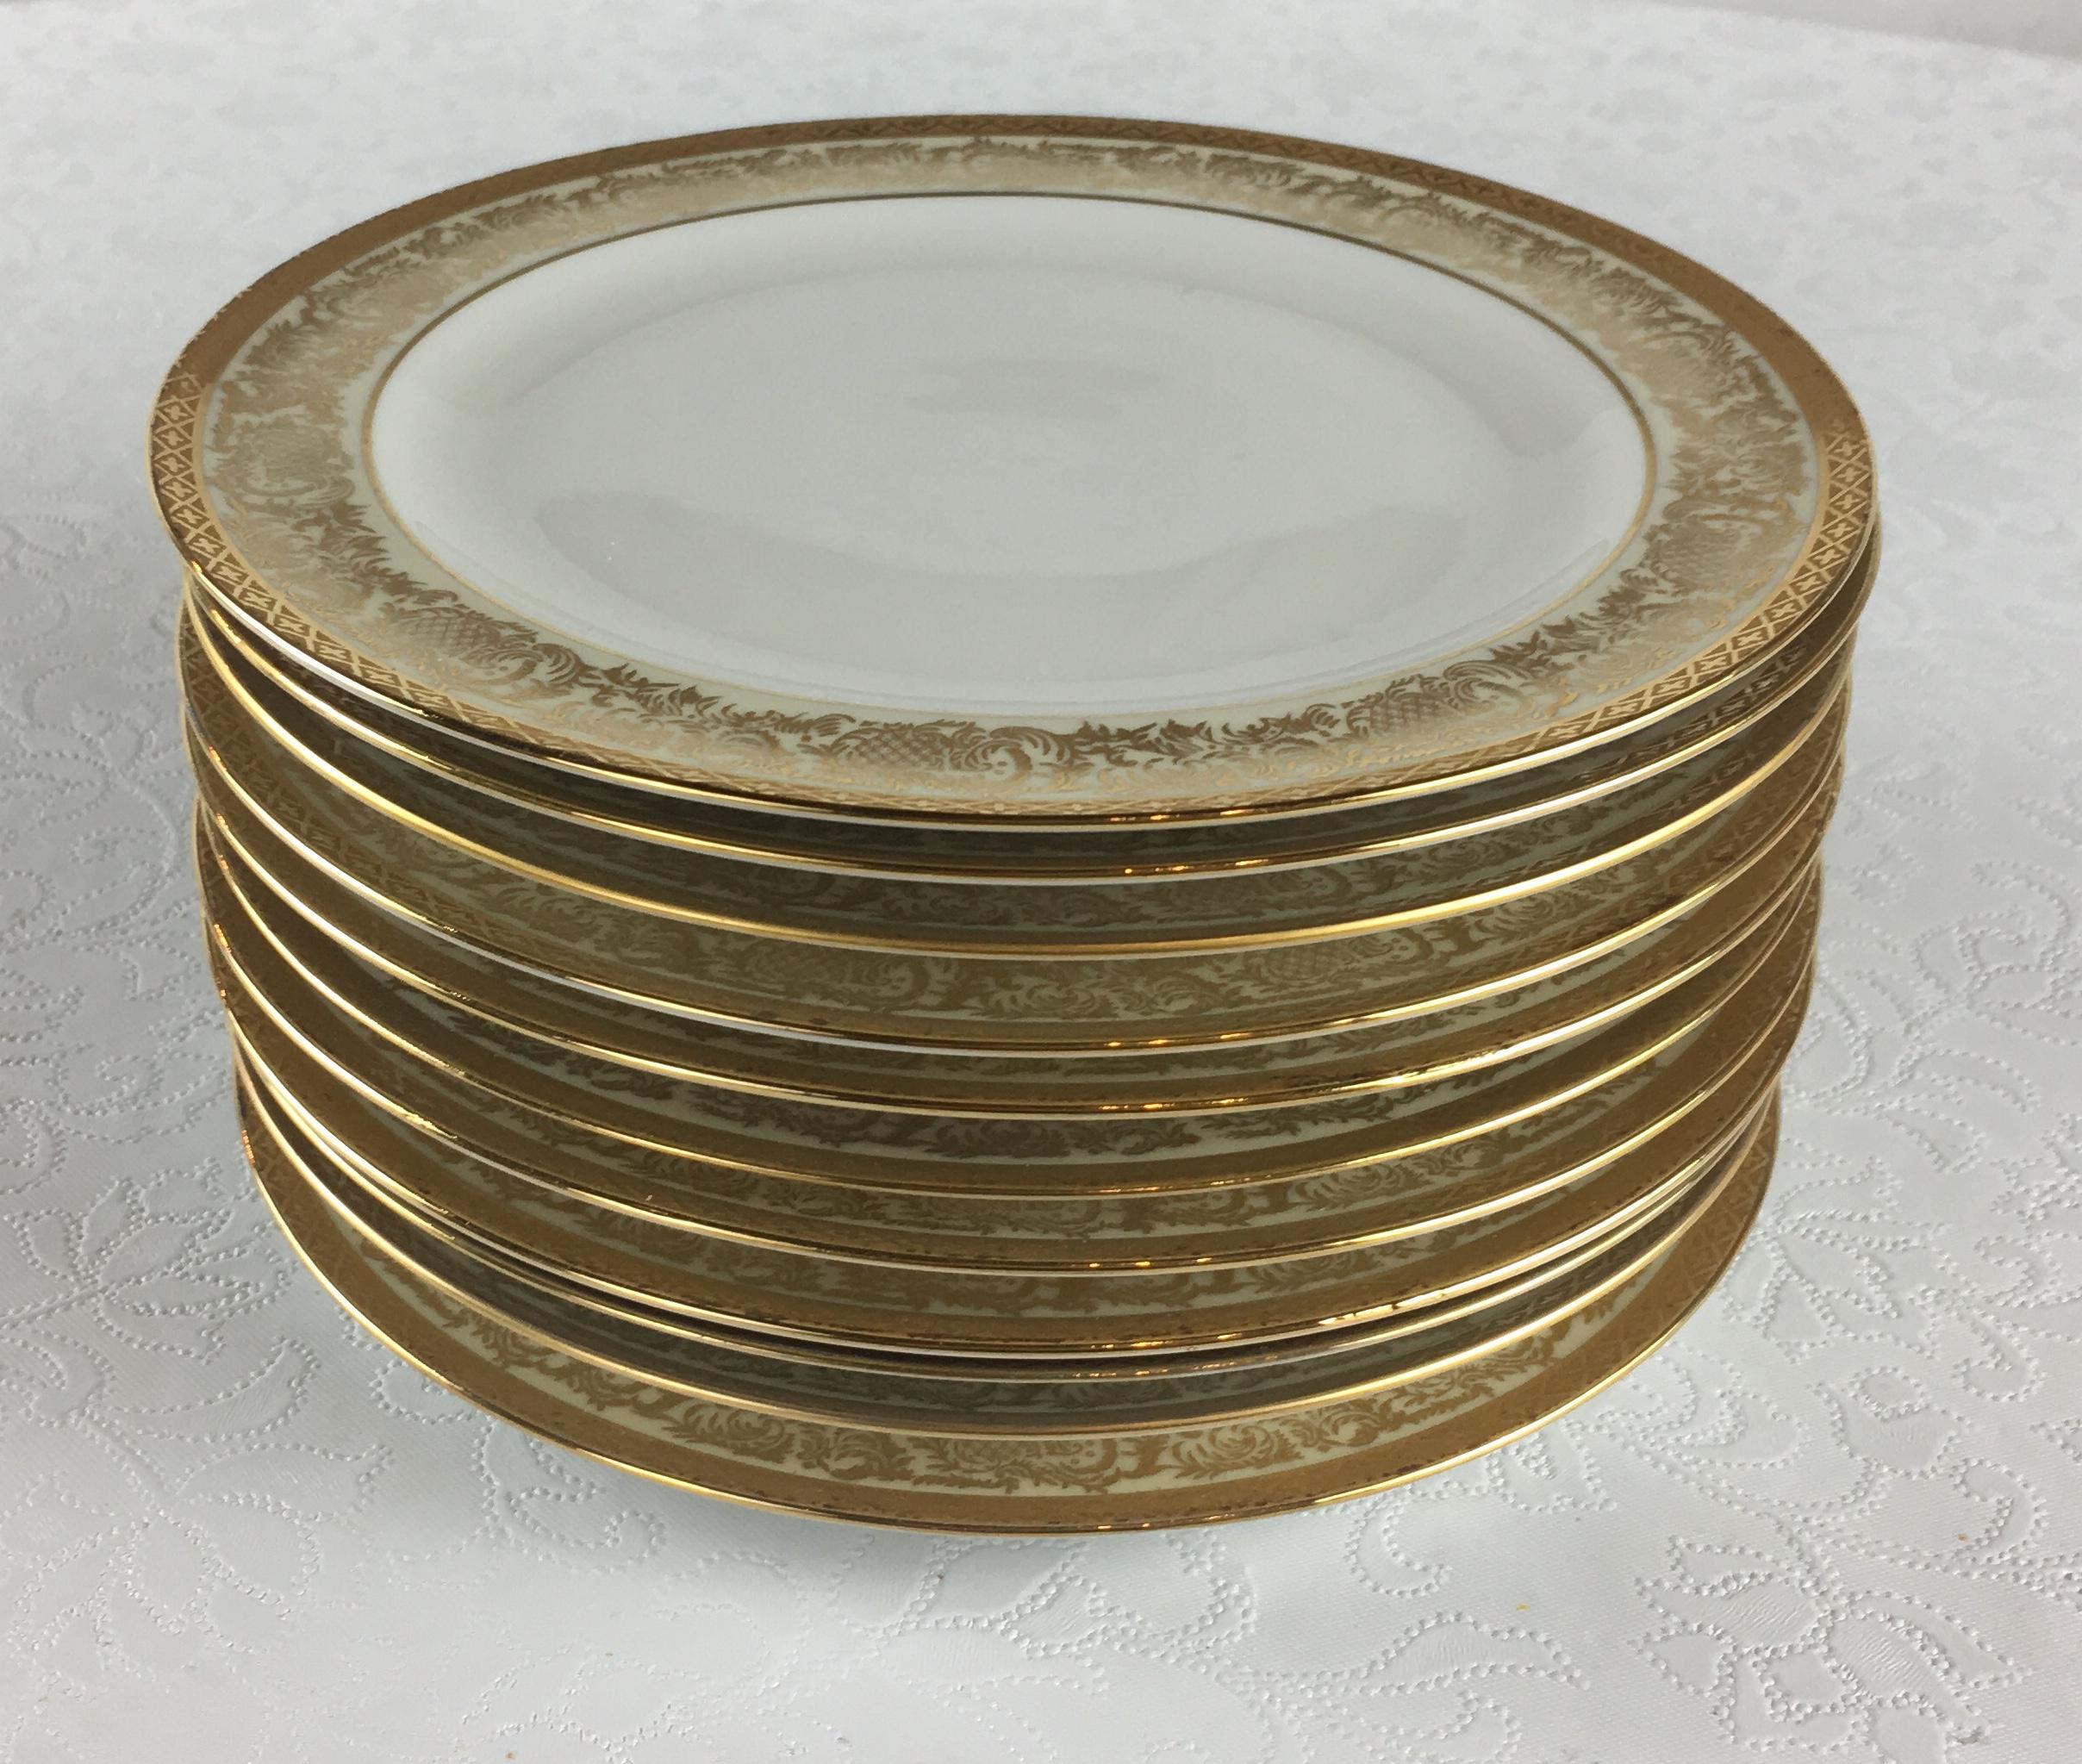 limoges gold rimmed plates